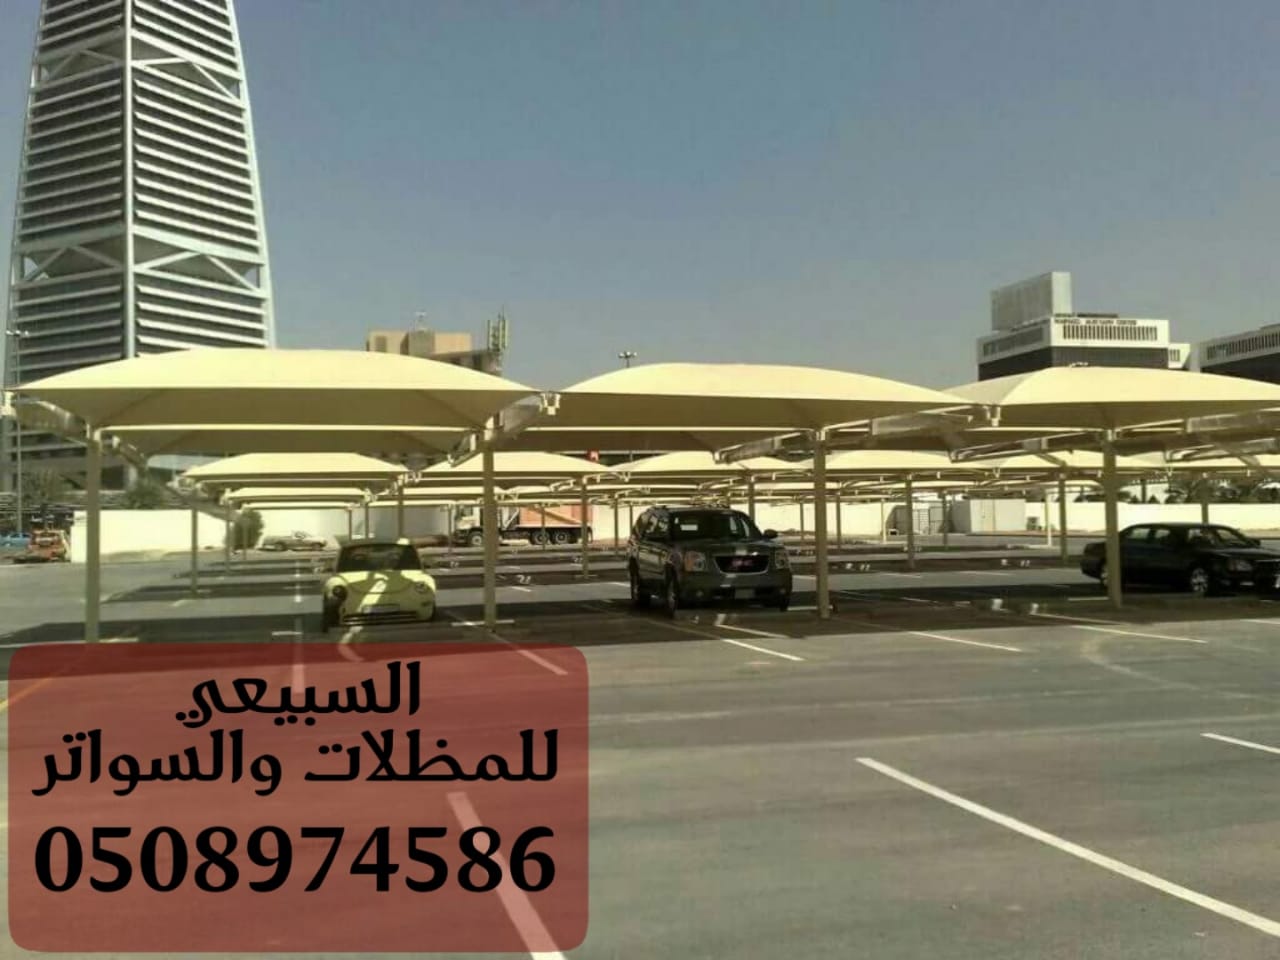 الرياض الرياض المظلات الرياض 050897458